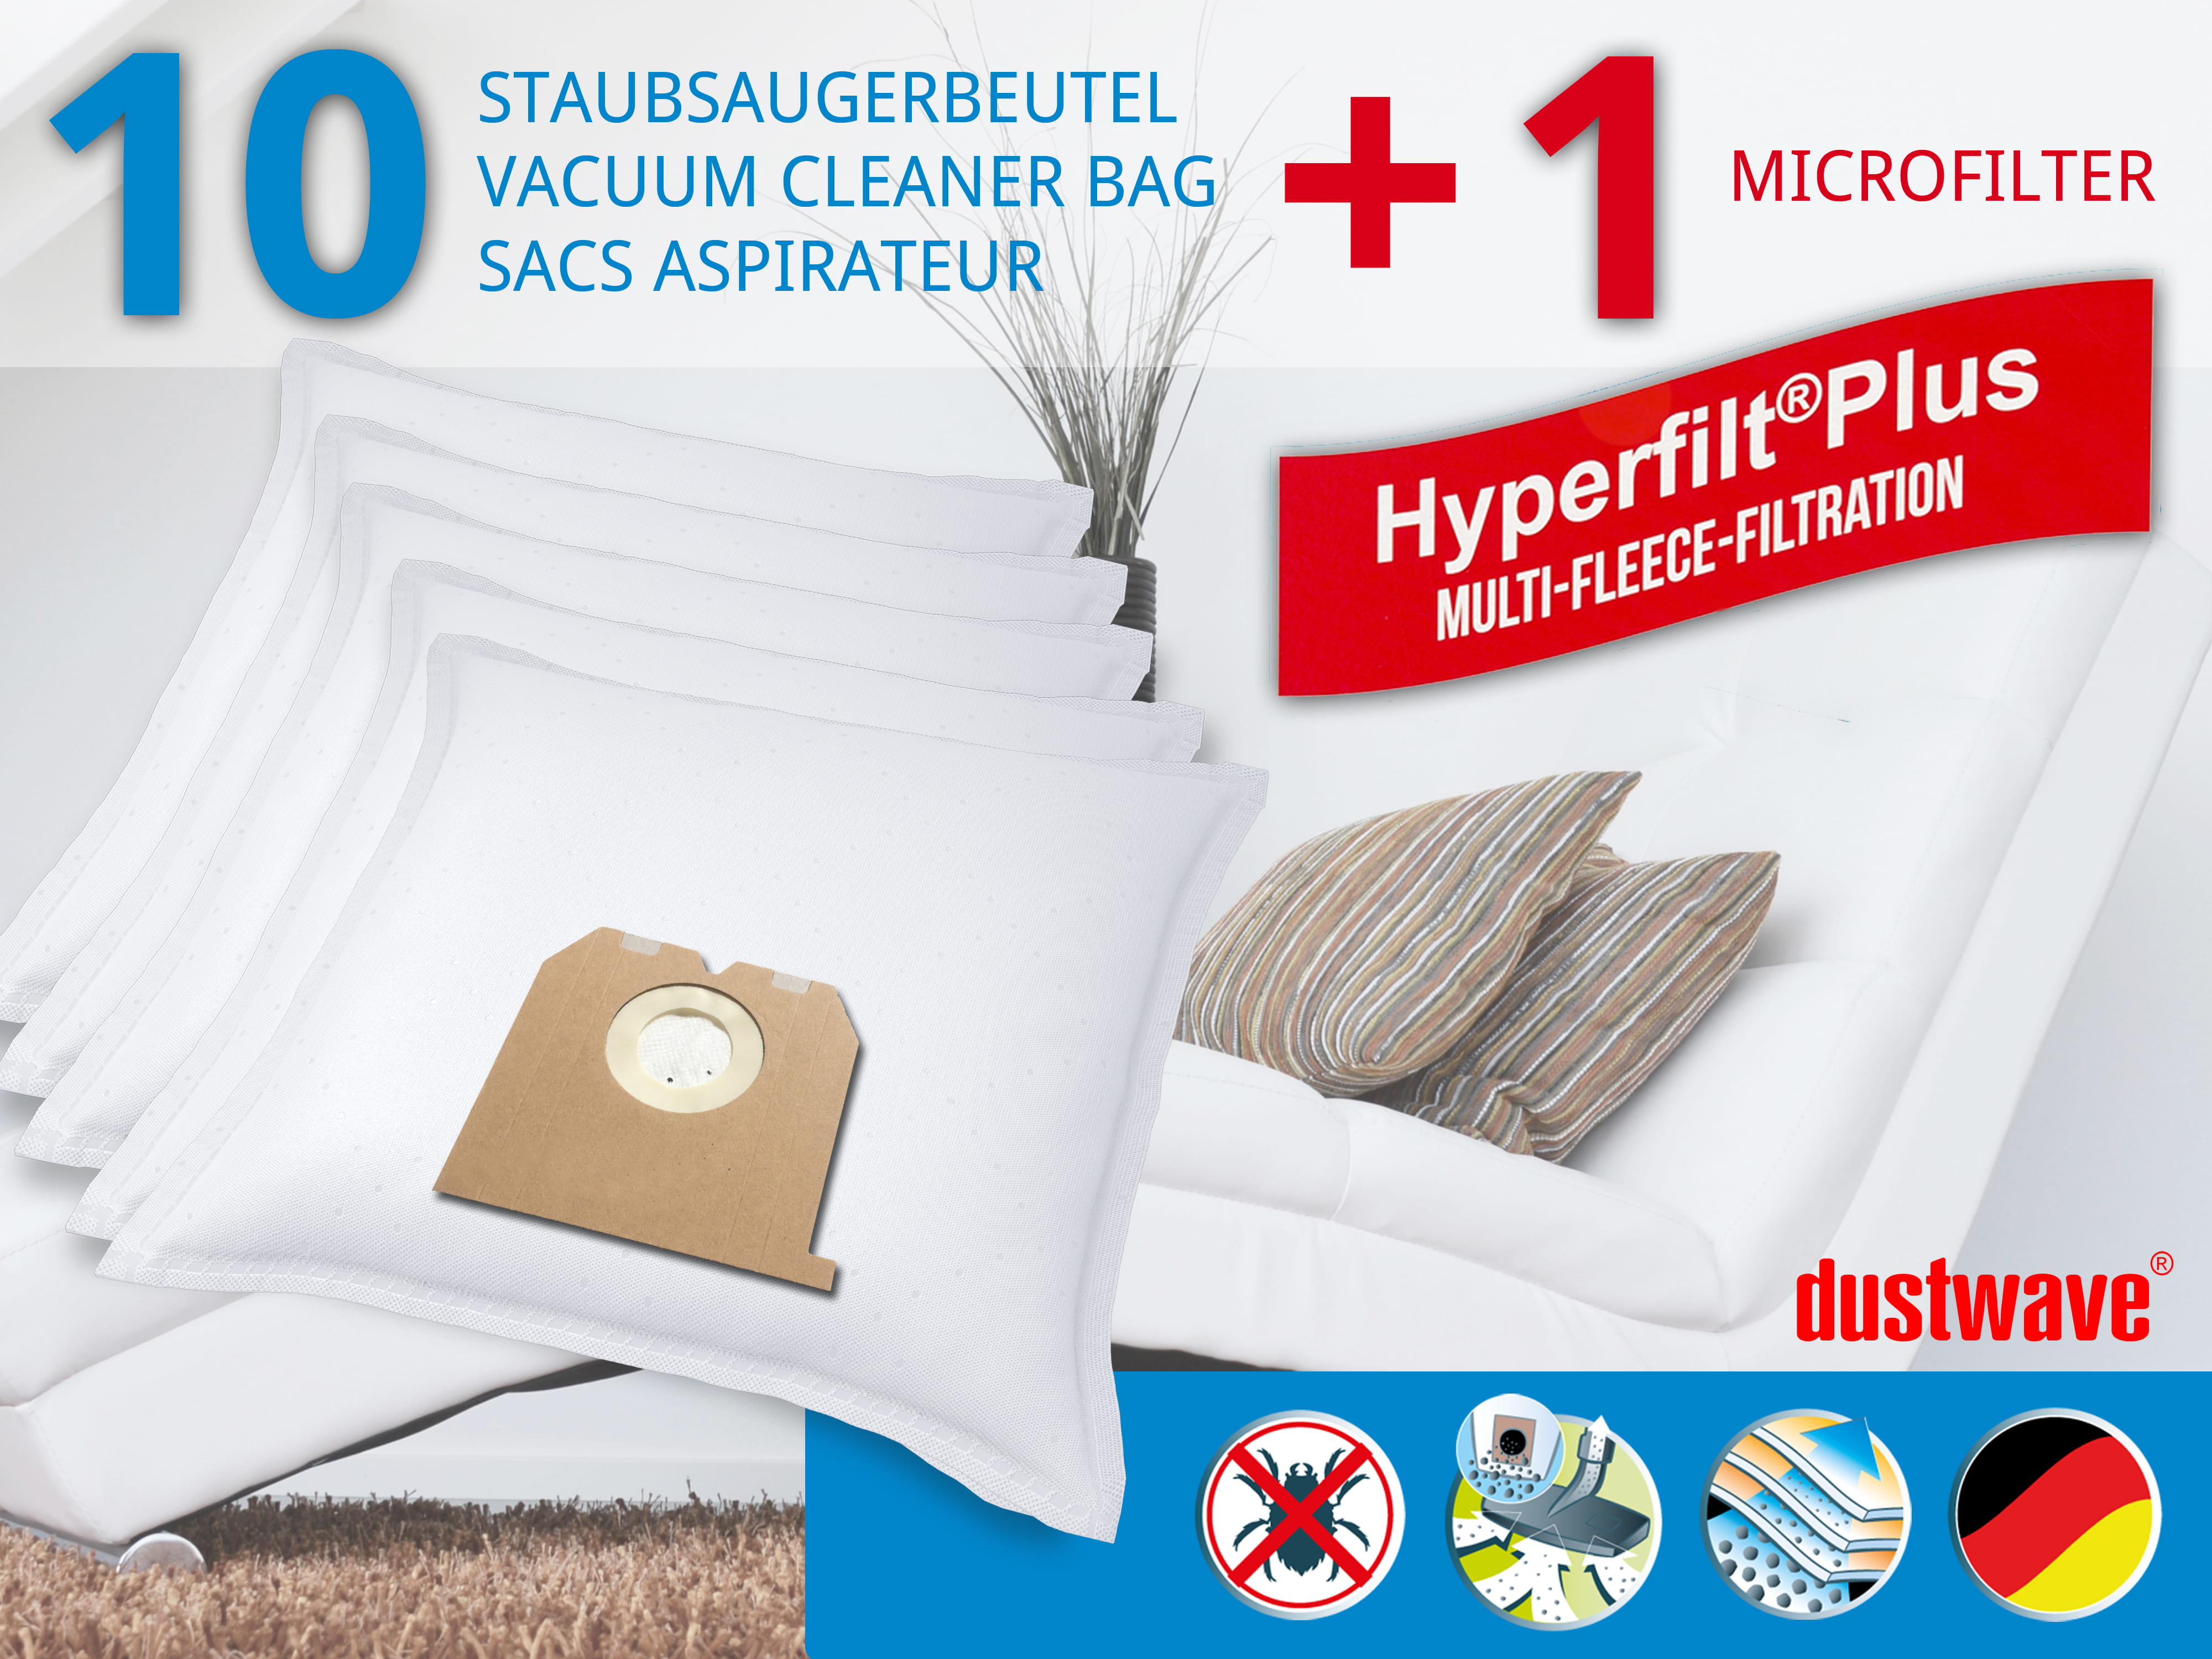 Dustwave® 10 Staubsaugerbeutel für Base BA 1201 - hocheffizient, mehrlagiges Mikrovlies mit Hygieneverschluss - Made in Germany